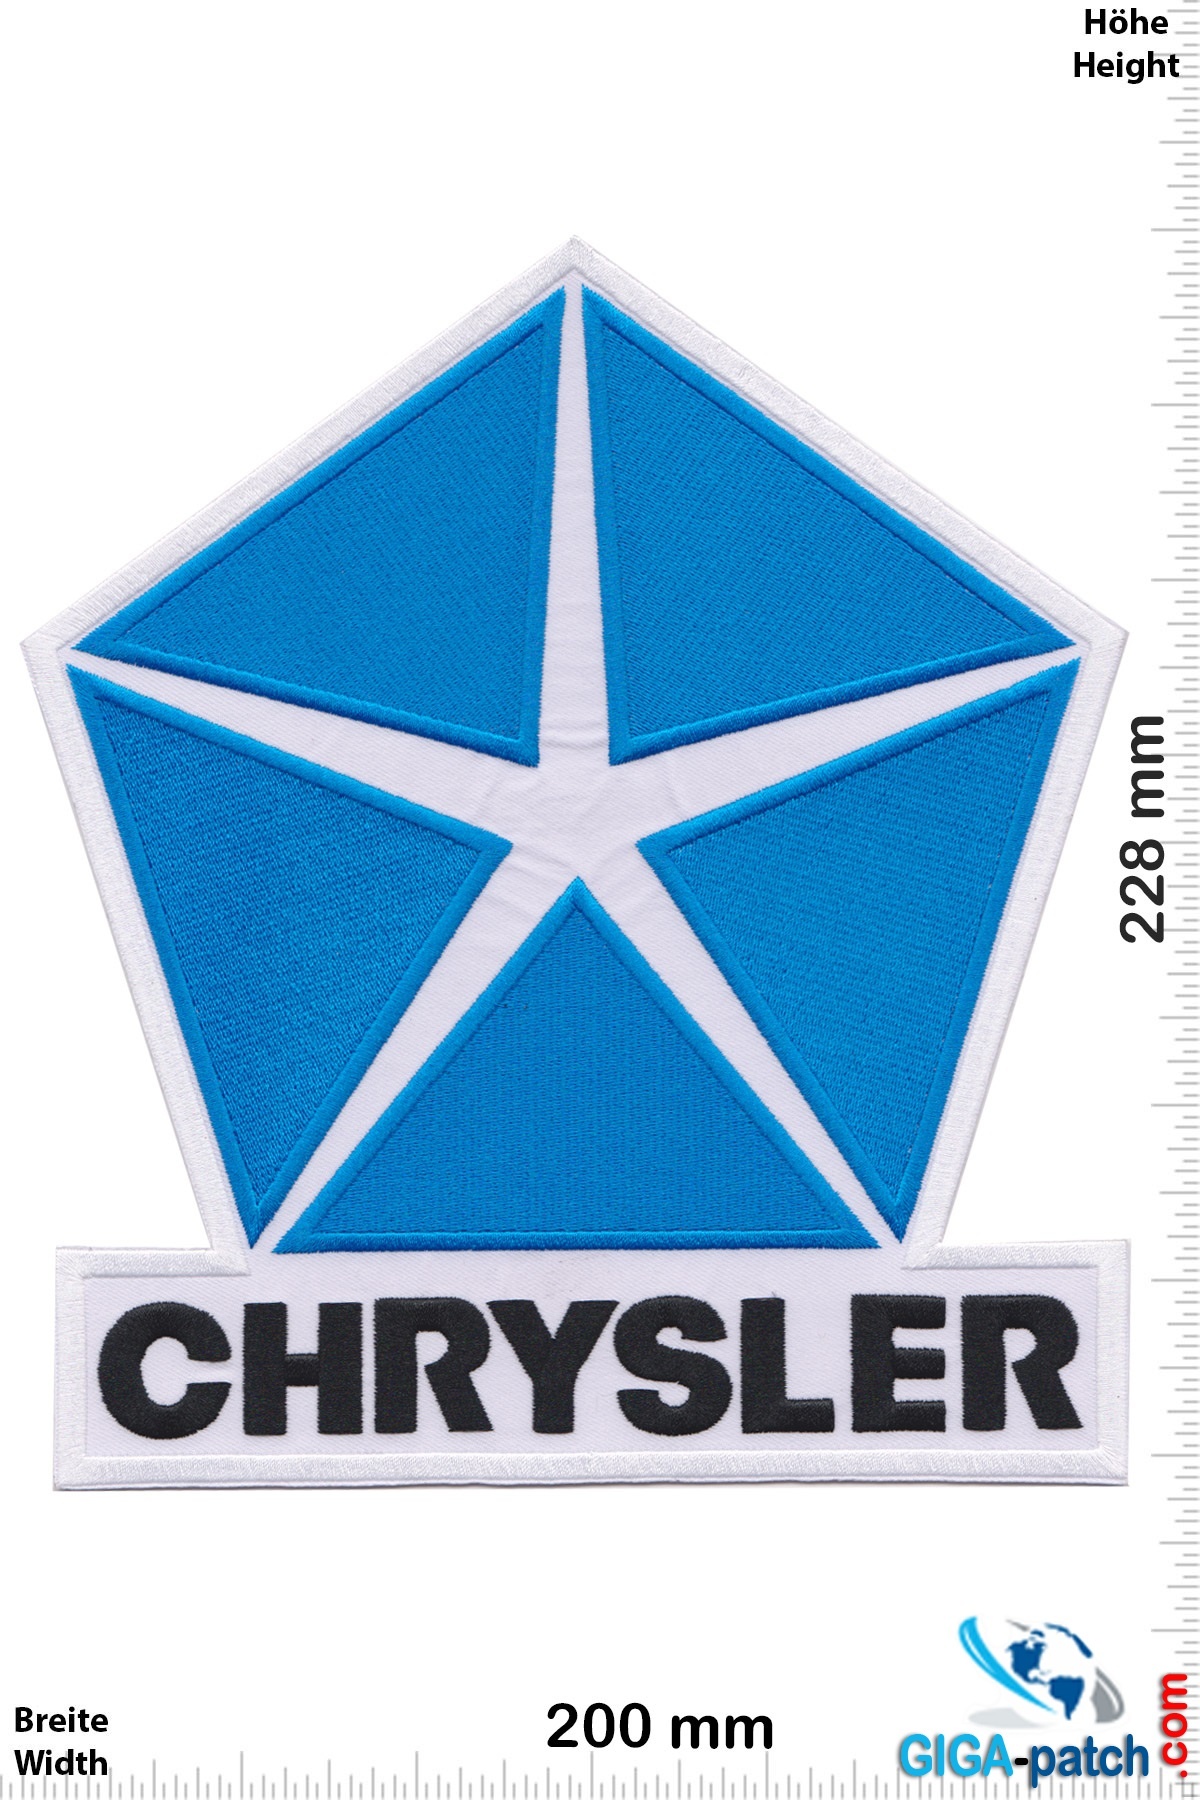 Chrysler Chrysler  -  23 cm